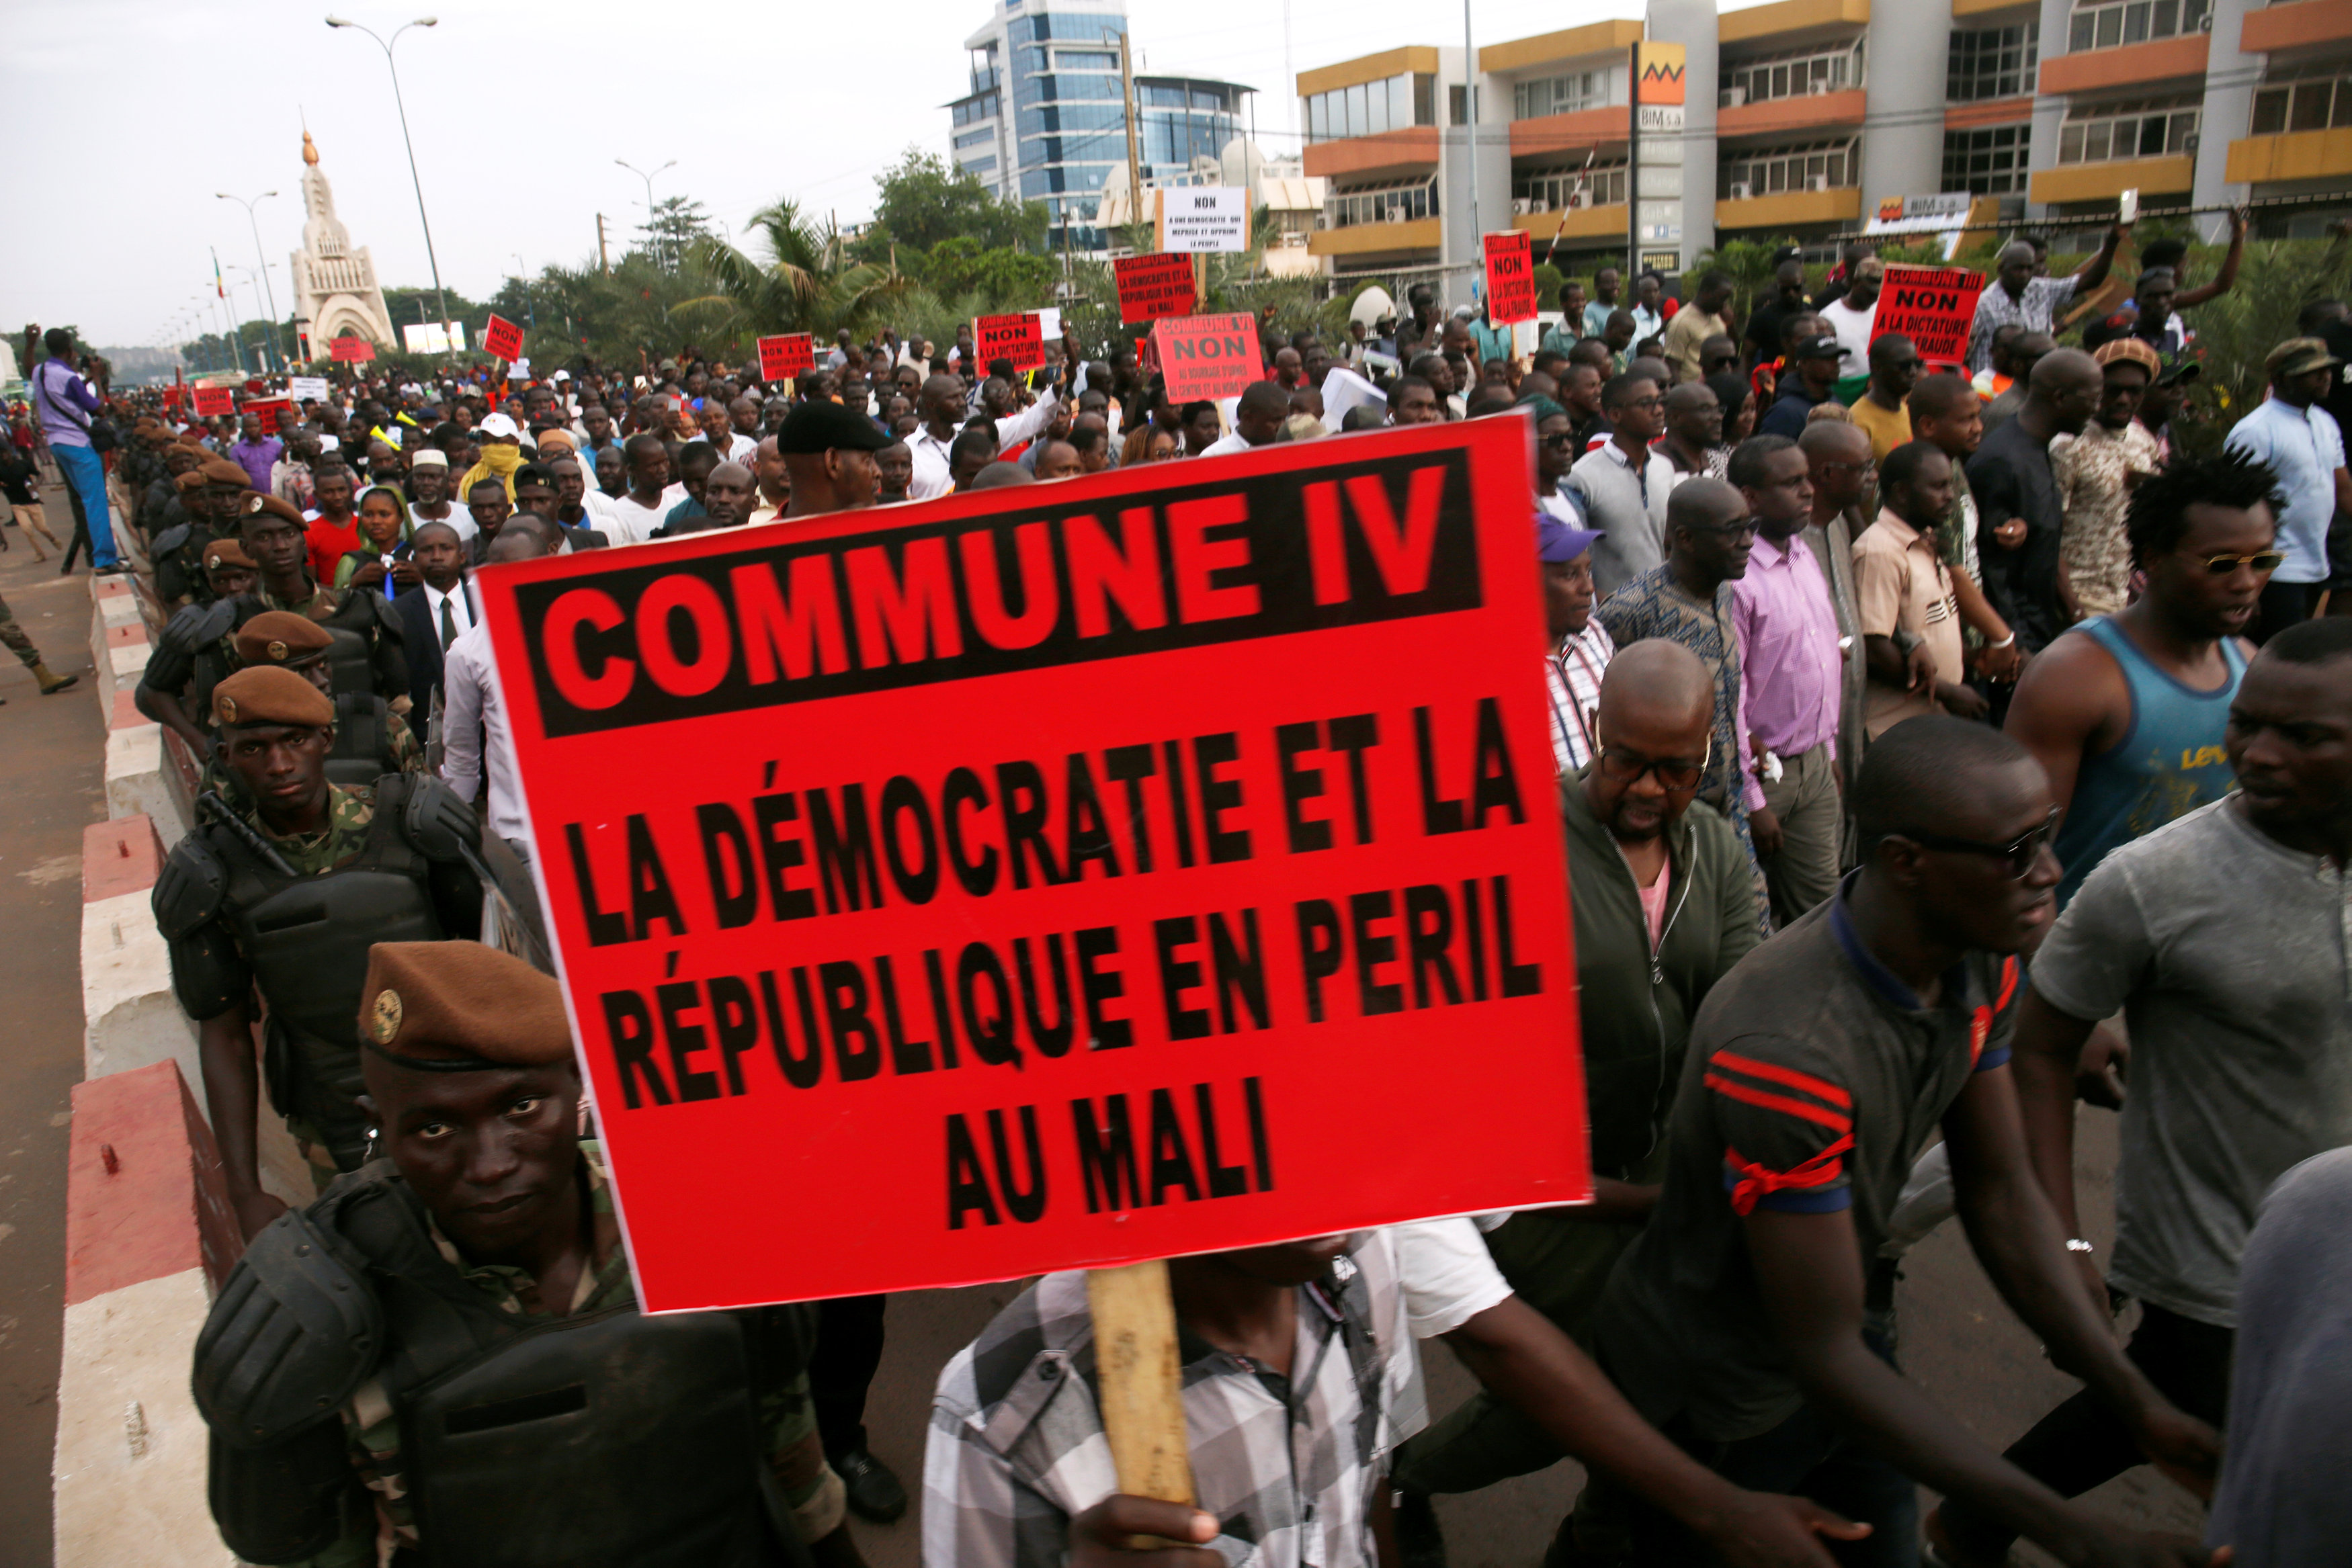 احتجاج لأنصار المعارضة في باماكو على ما يقولون إنها مخالفات في فرز الأصوات في الجولة الأولى. رويترز